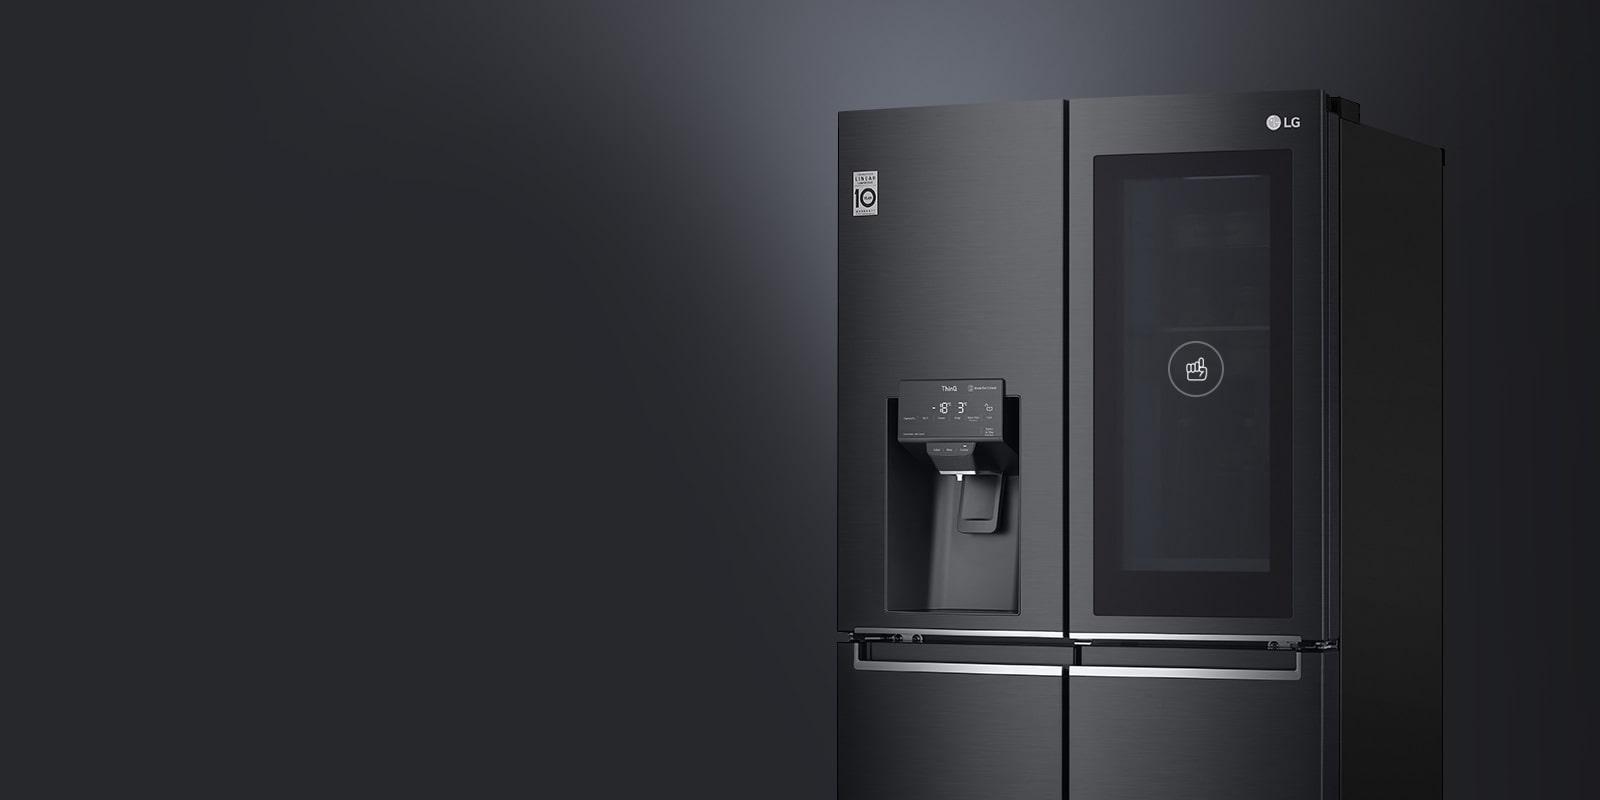 Az LG hűtő felső része látható, ami kiemeli a matt fekete színt és a sötétített üveget.